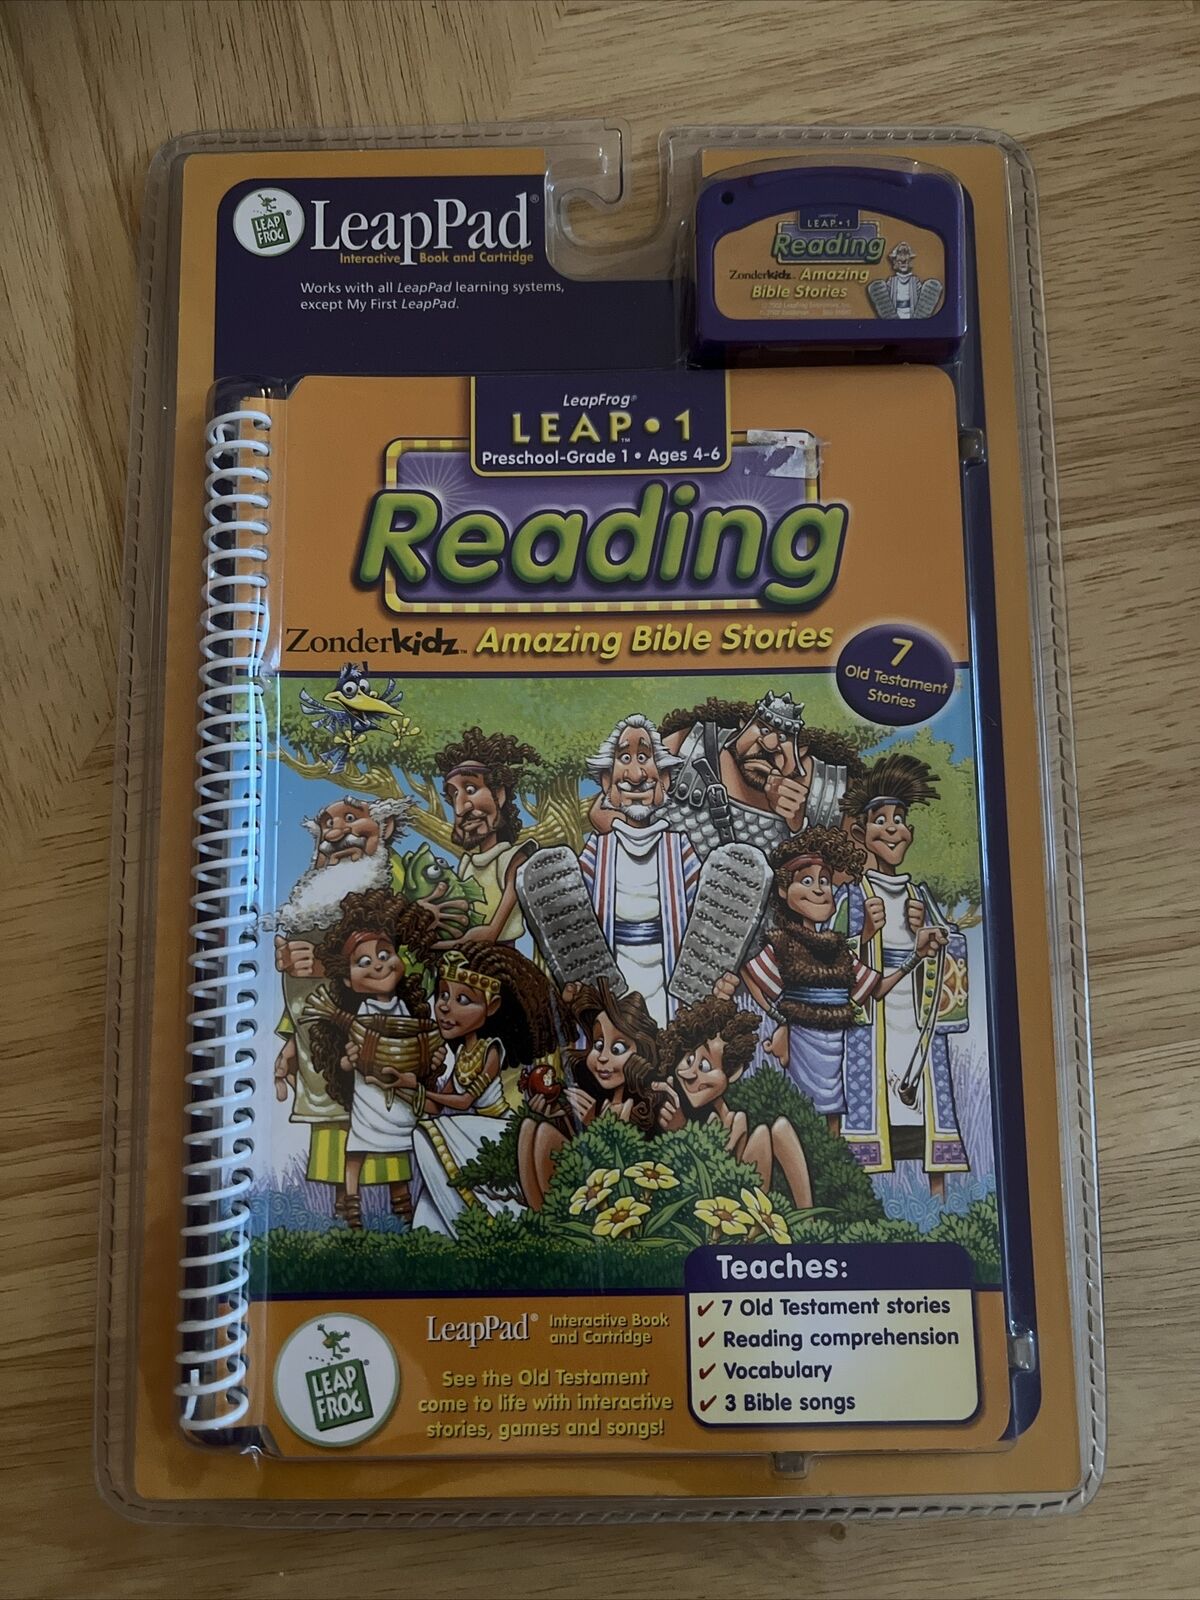 LeapFrog Leap 1 Reading: Amazing Bible Stories Zonderkids Preschool-Grade 1